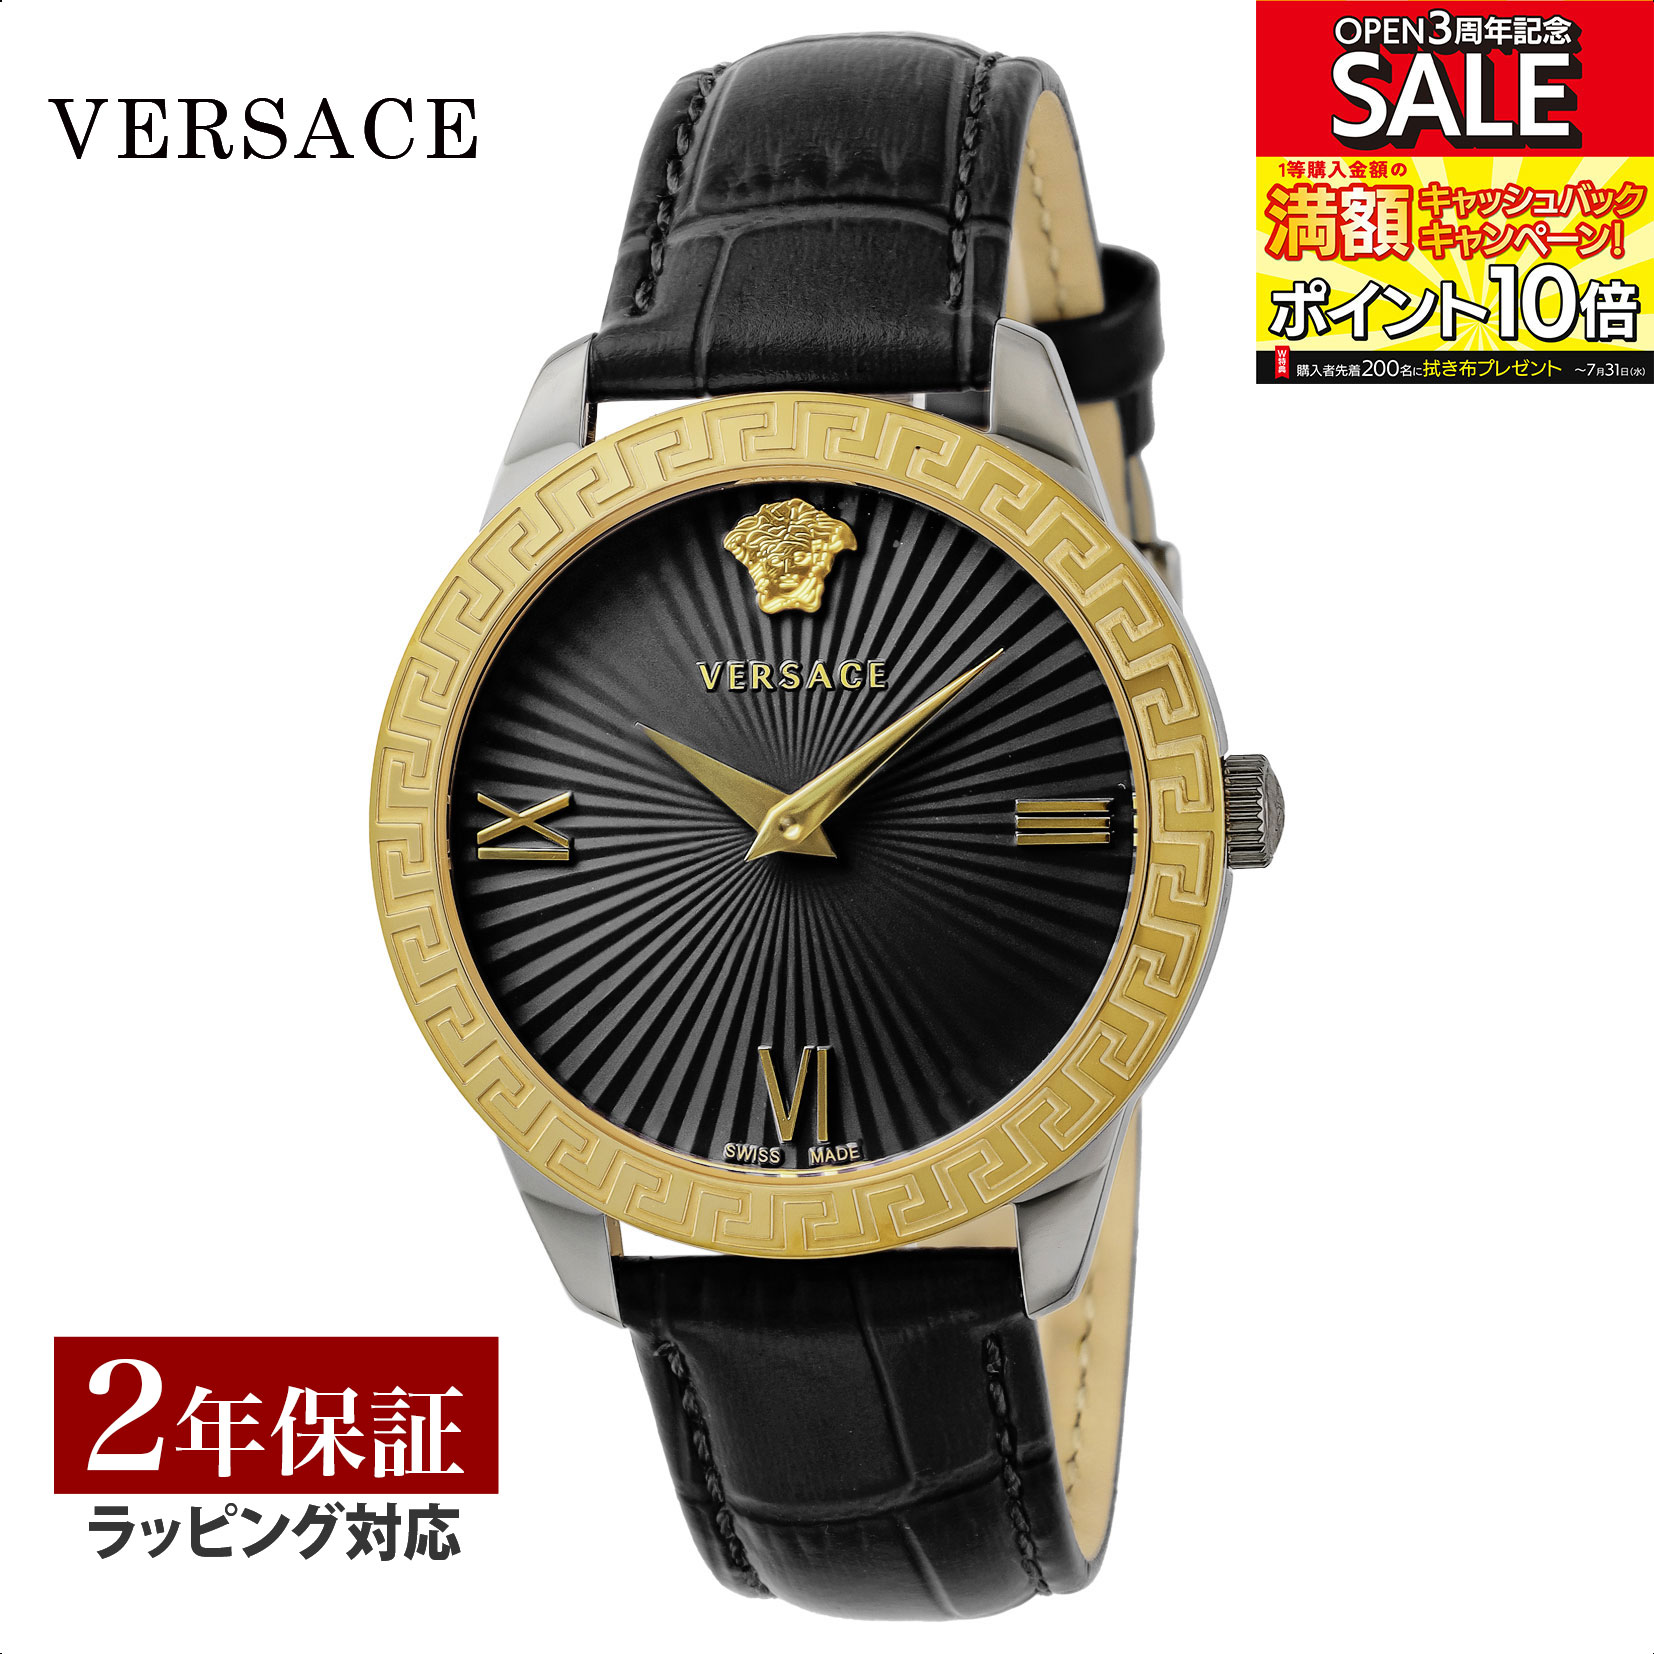 ヴェルサーチェ VERSACE ユニセックス 時計 グレカ シグネチャー Greca Signature クォーツ ブラック VEVC00319 腕時計 高級腕時計 ブランド